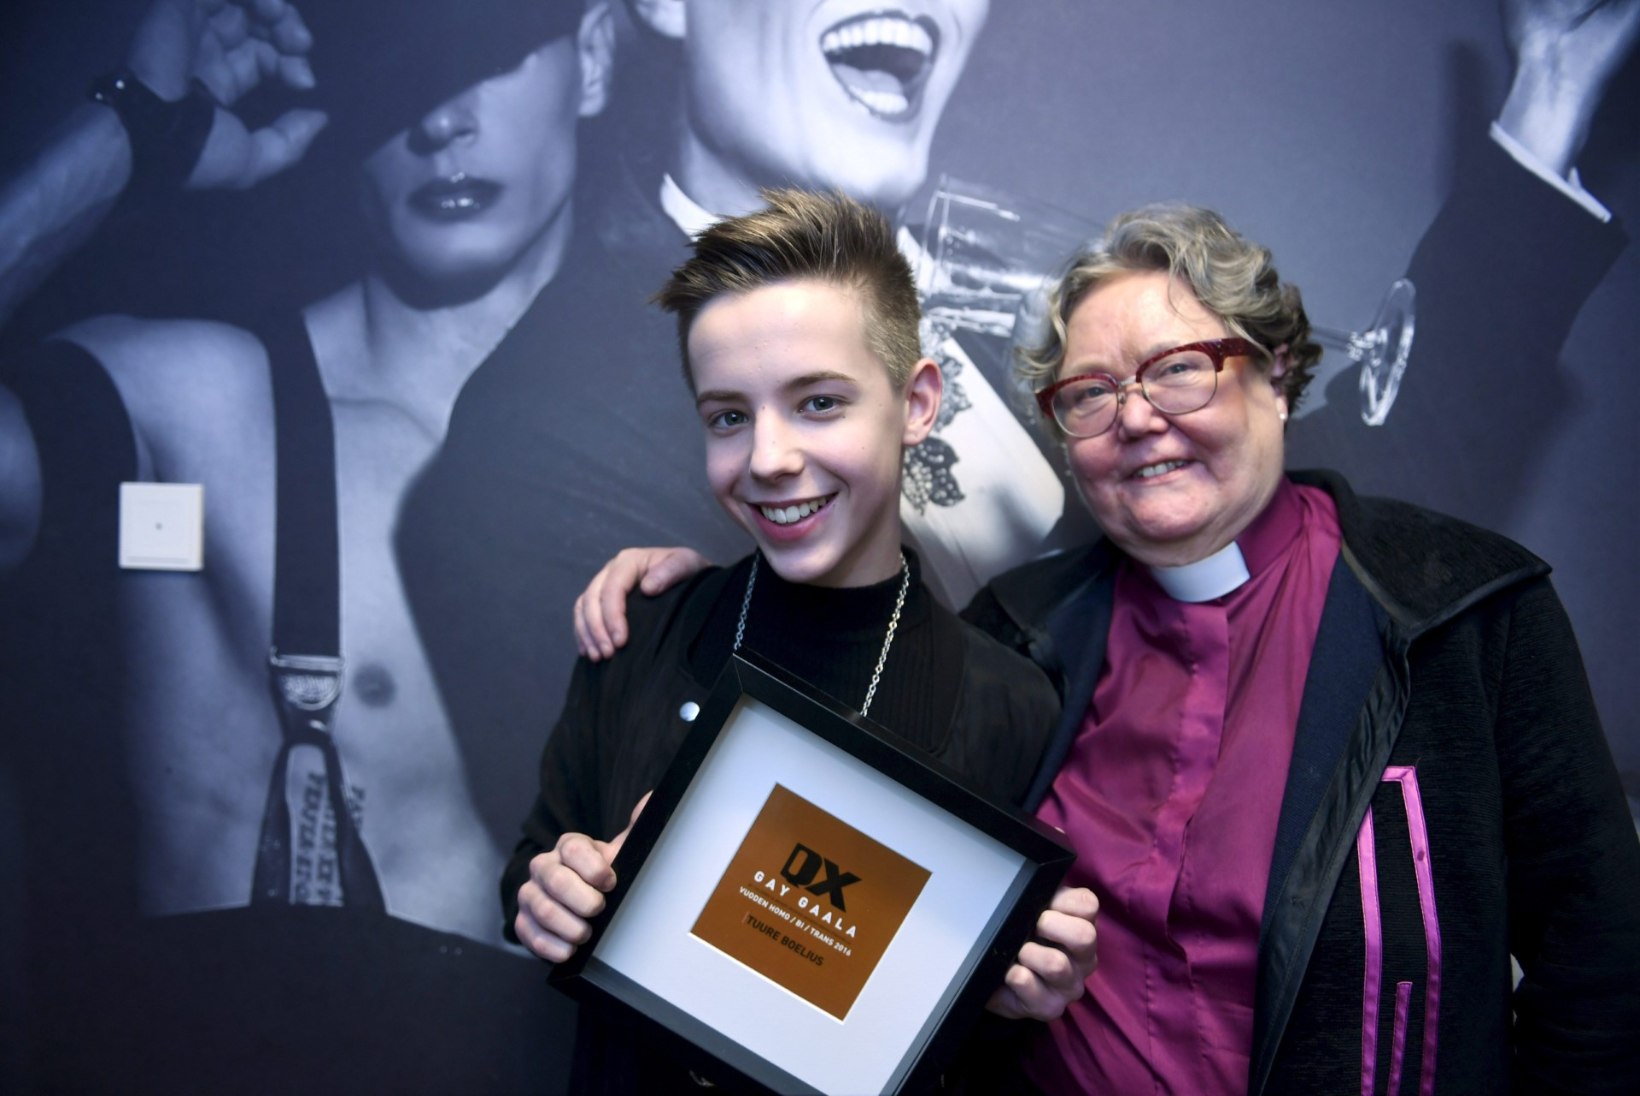 Soome aasta homo tiitli pälvis 16aastane poiss